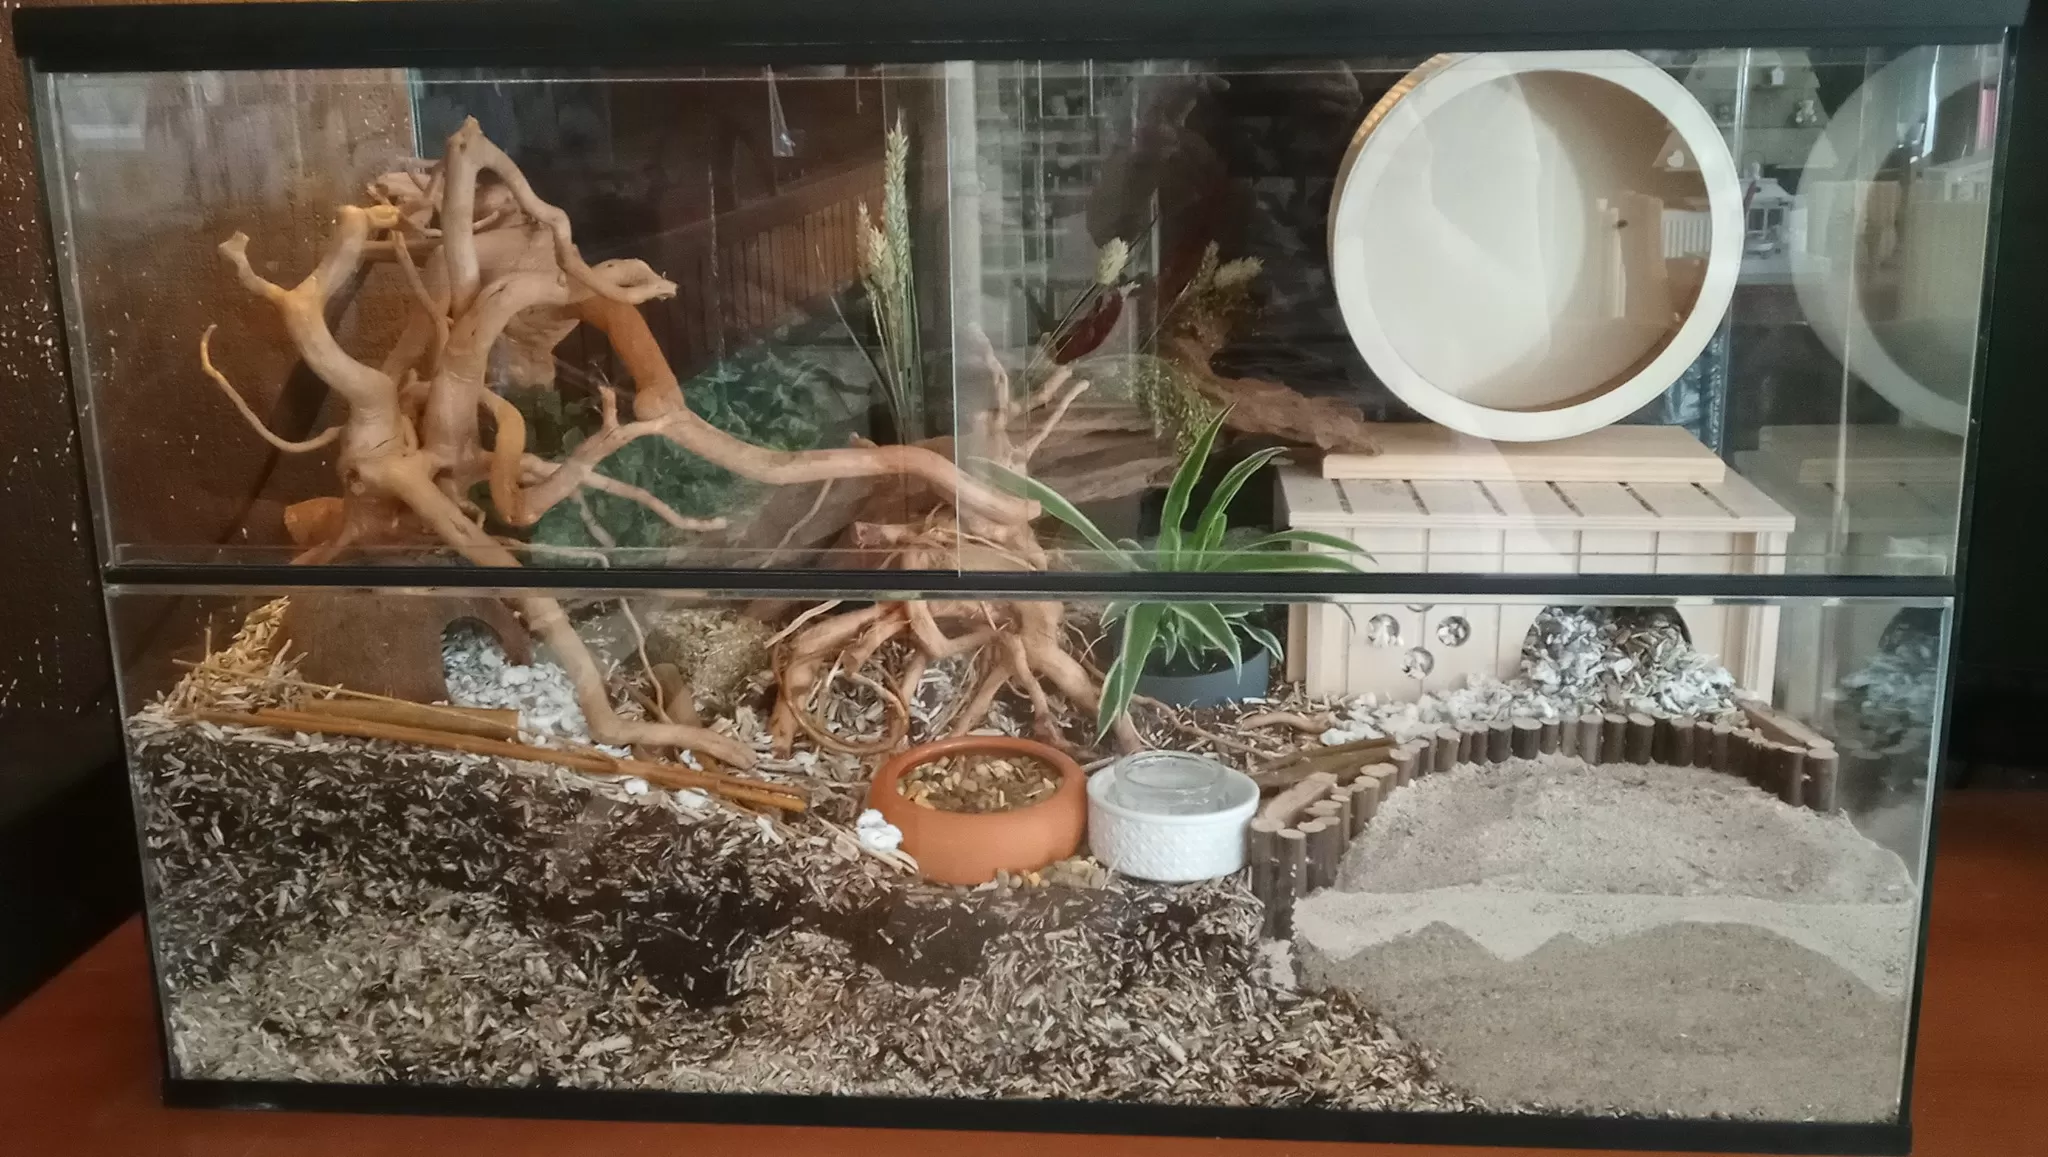 Fantasie Rijke man Ramkoers Hamster terrarium met schuifruiten zonder plateaus - Hamsterscaping